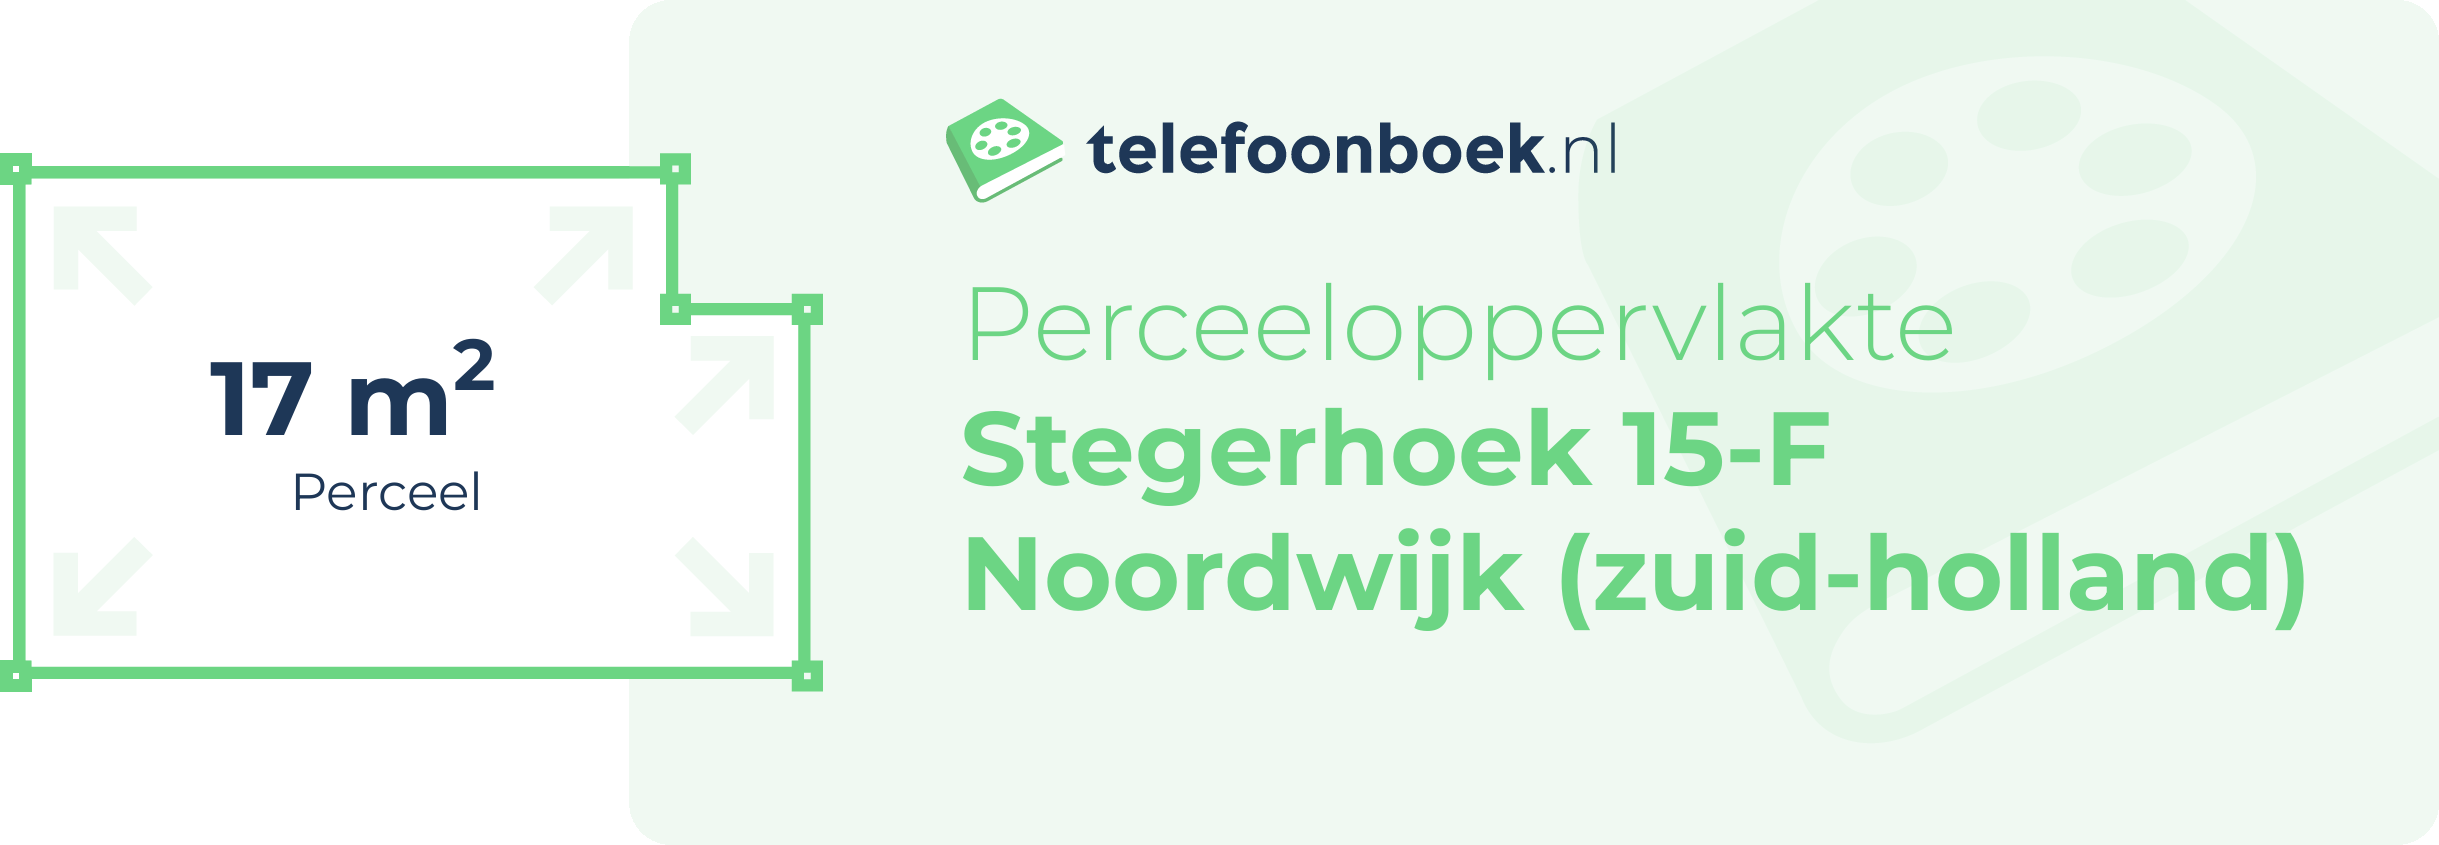 Perceeloppervlakte Stegerhoek 15-F Noordwijk (Zuid-Holland)